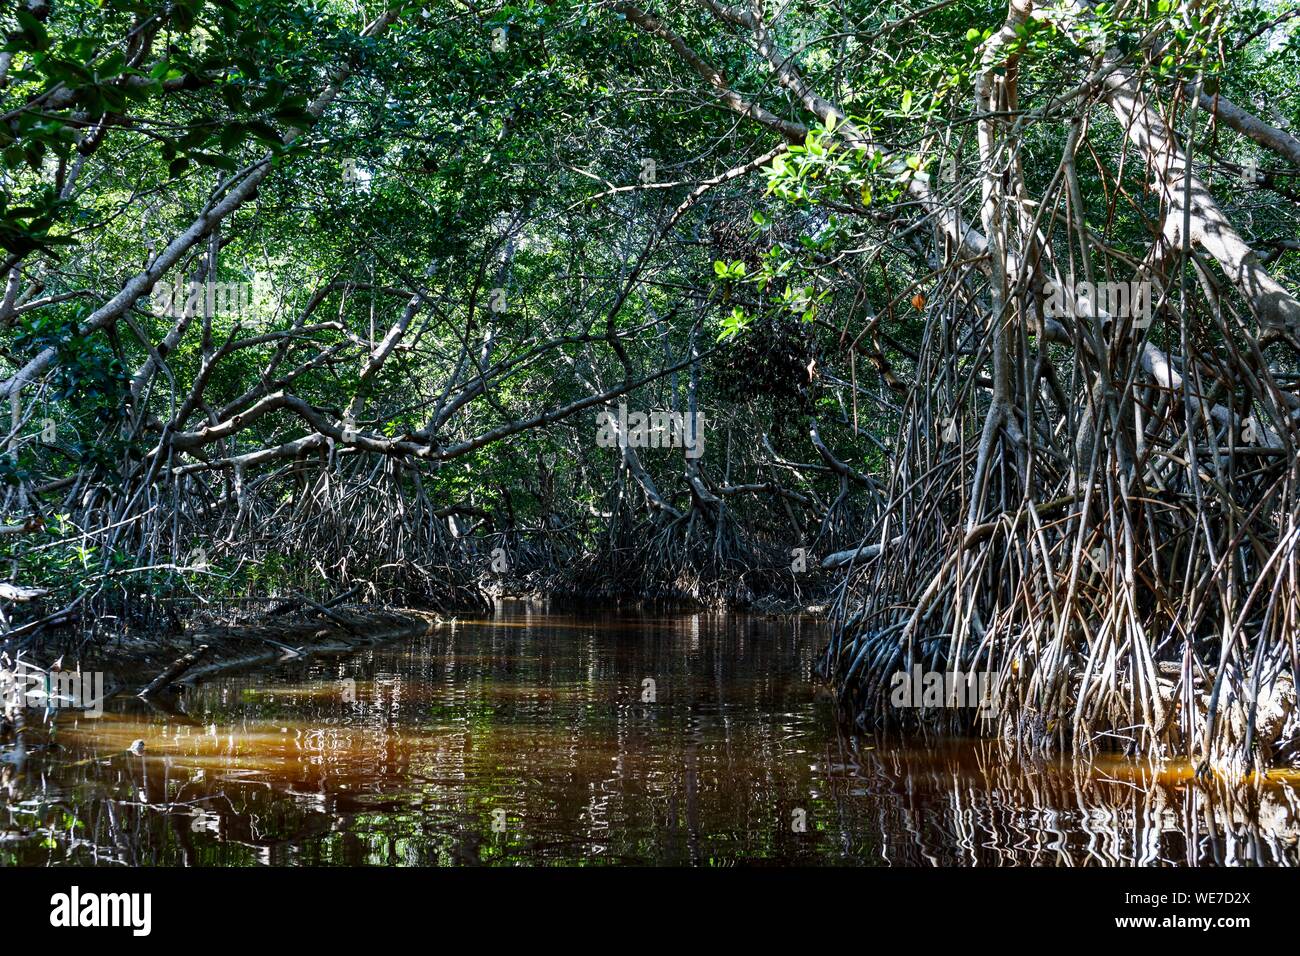 México, Estado de Yucatán, Celestún, paletuvier raíces en el manglar Foto de stock